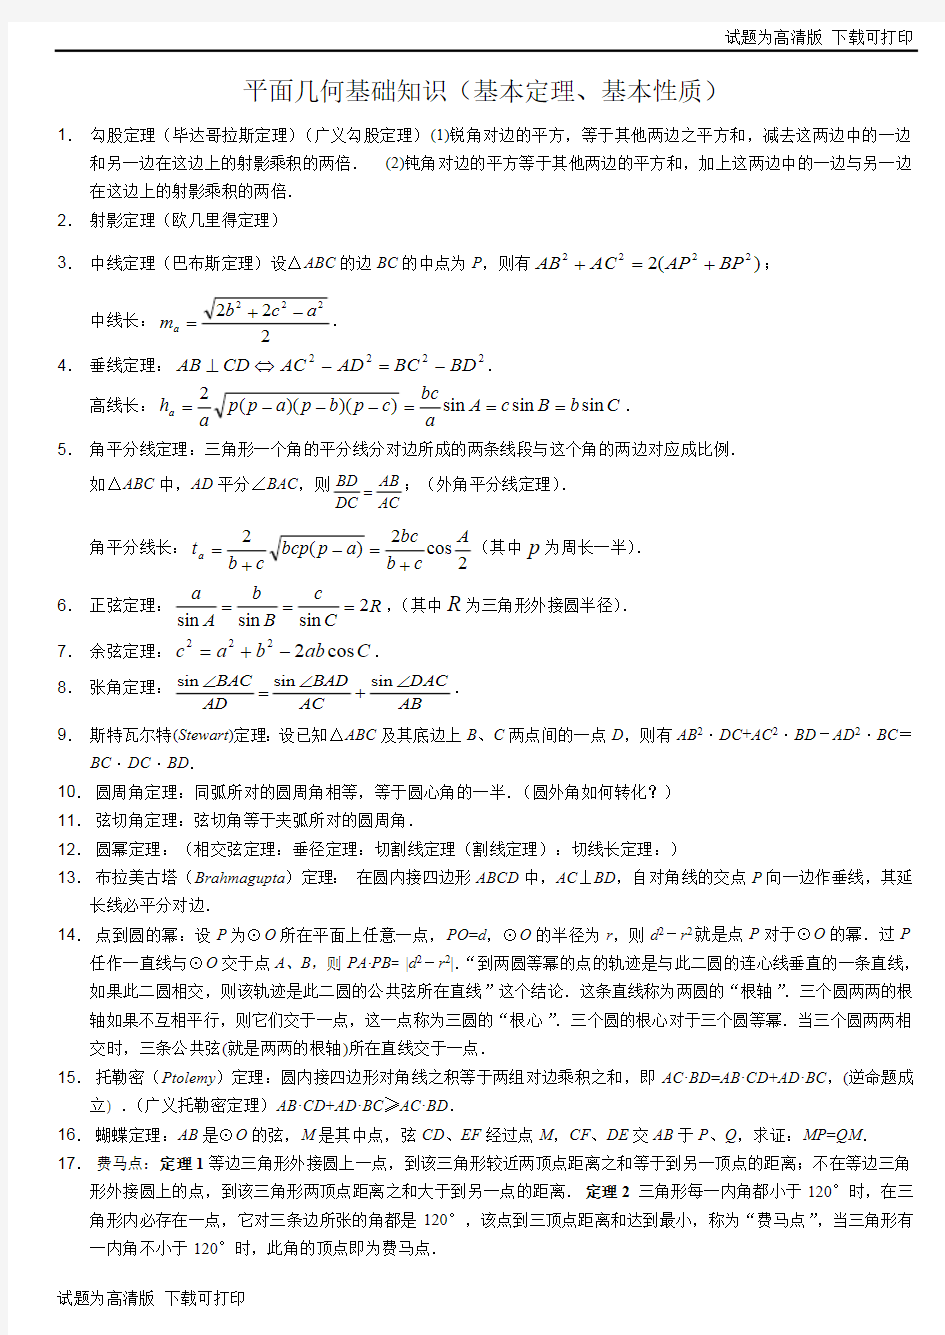 高中数学竞赛平面几何基本定理.pdf